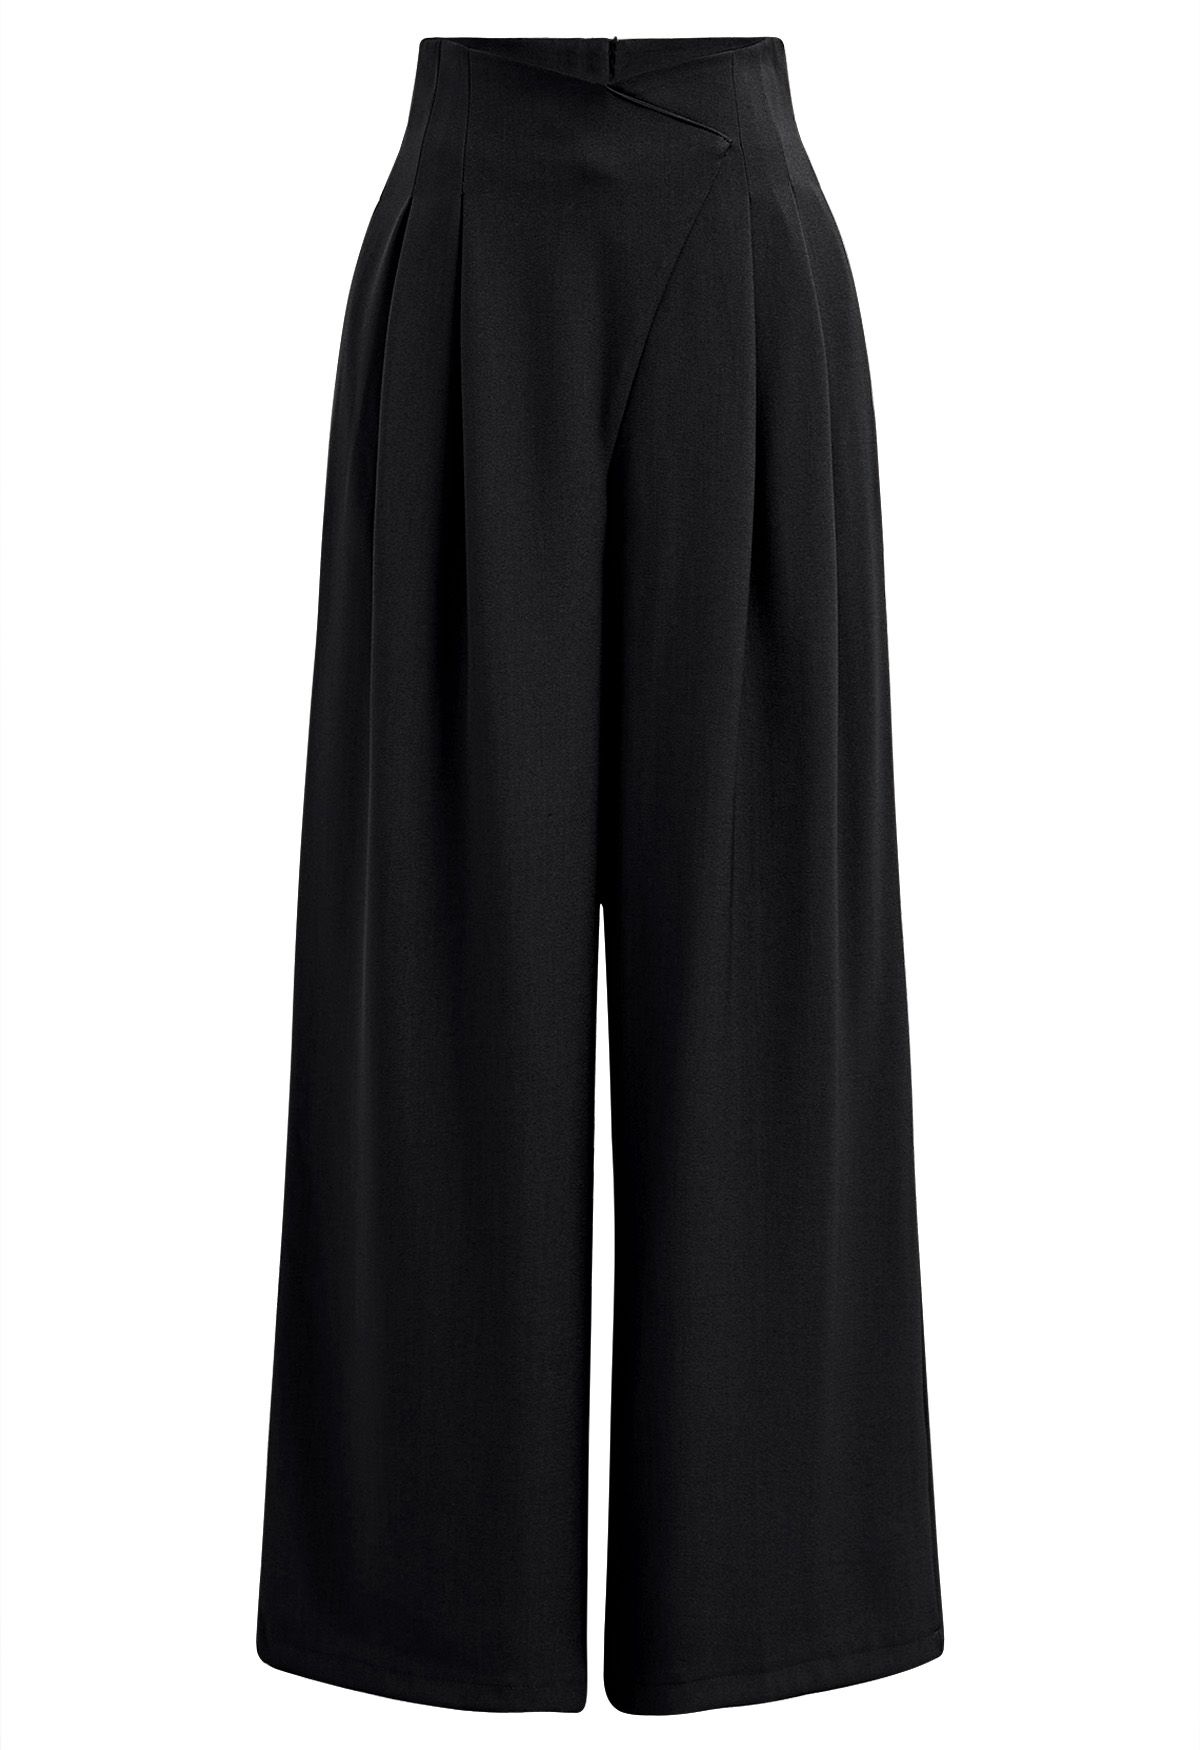 Pantalones rectos plisados con cintura cruzada en negro